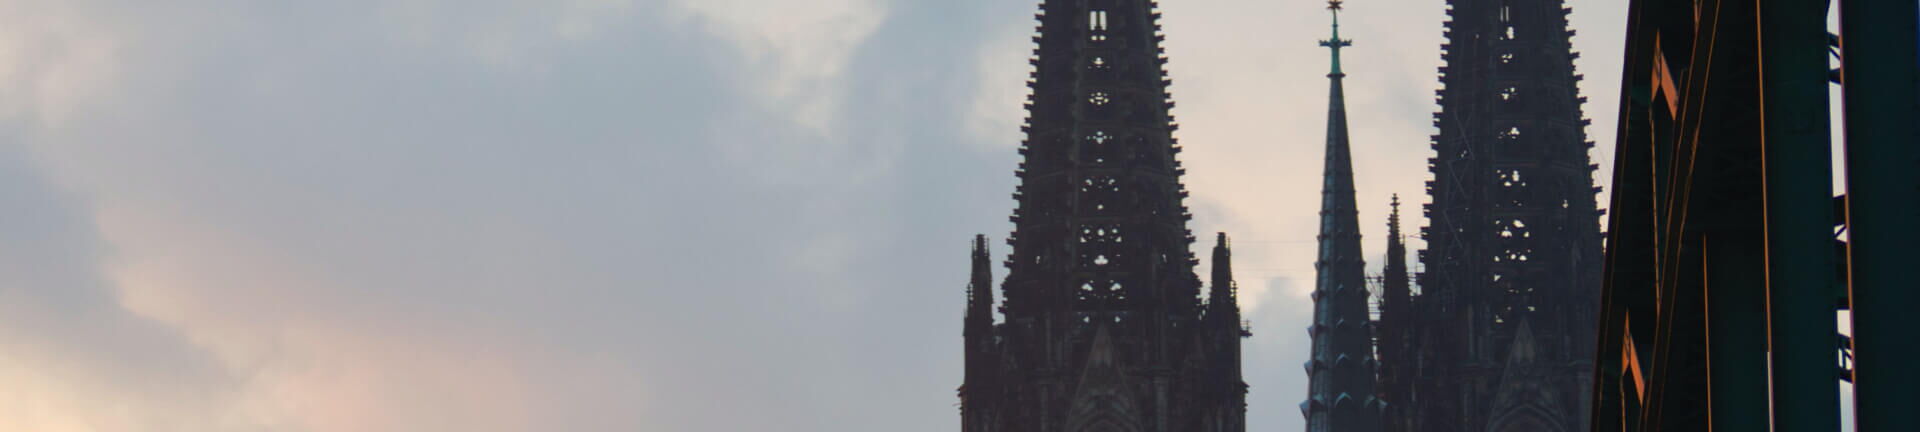 Detailaufnahme der Turmspitzen des Kölner Doms